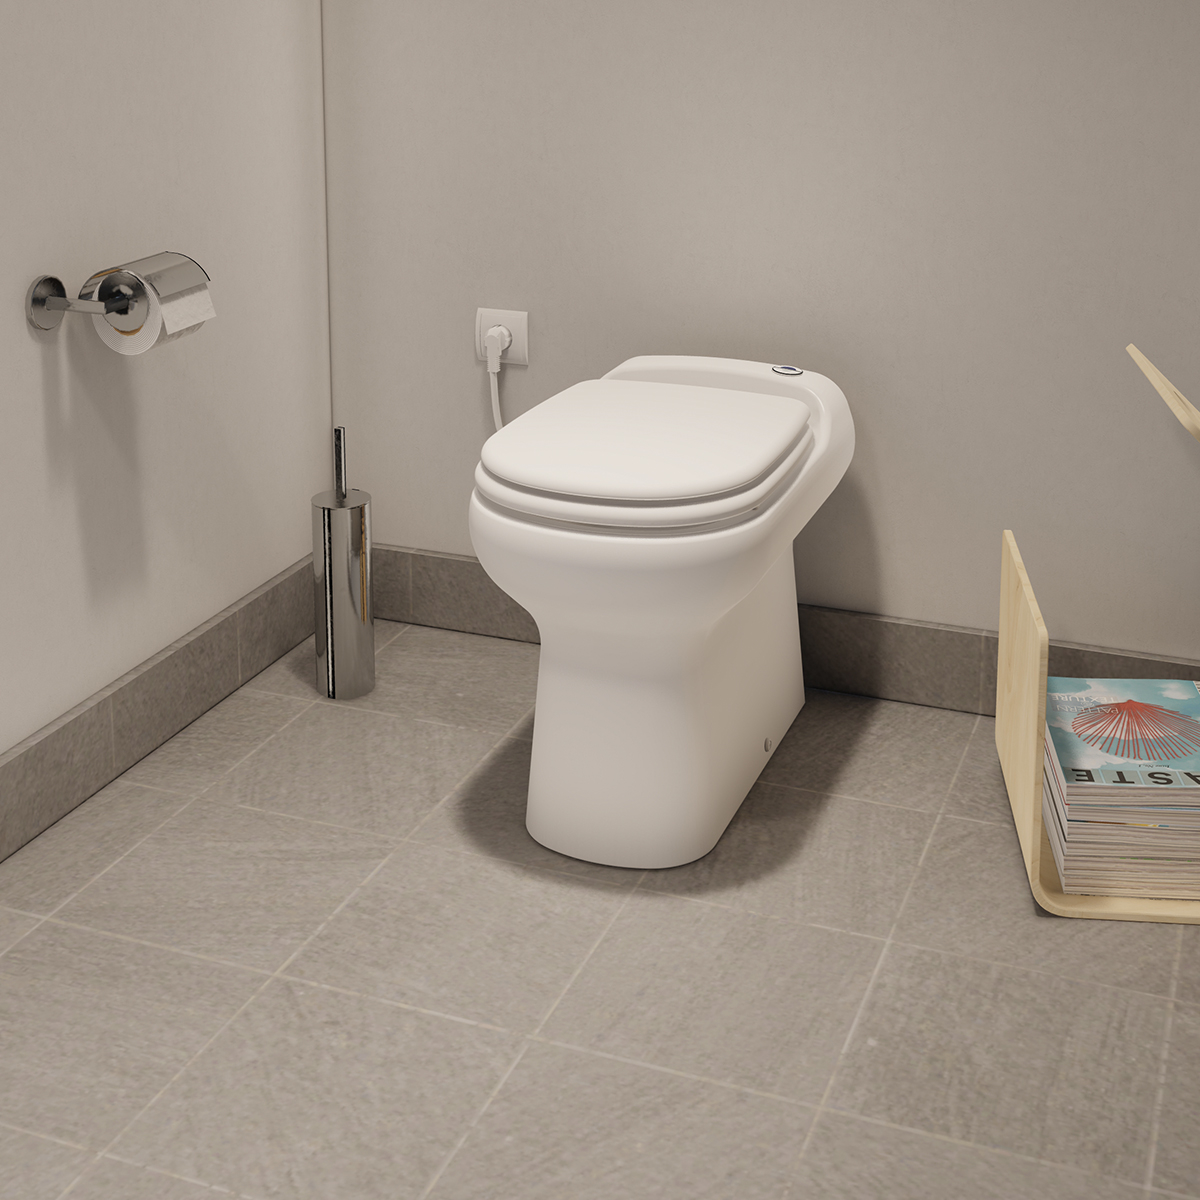 Visuel de Sanicompact Elite  Toilettes avec broyeur intégré 